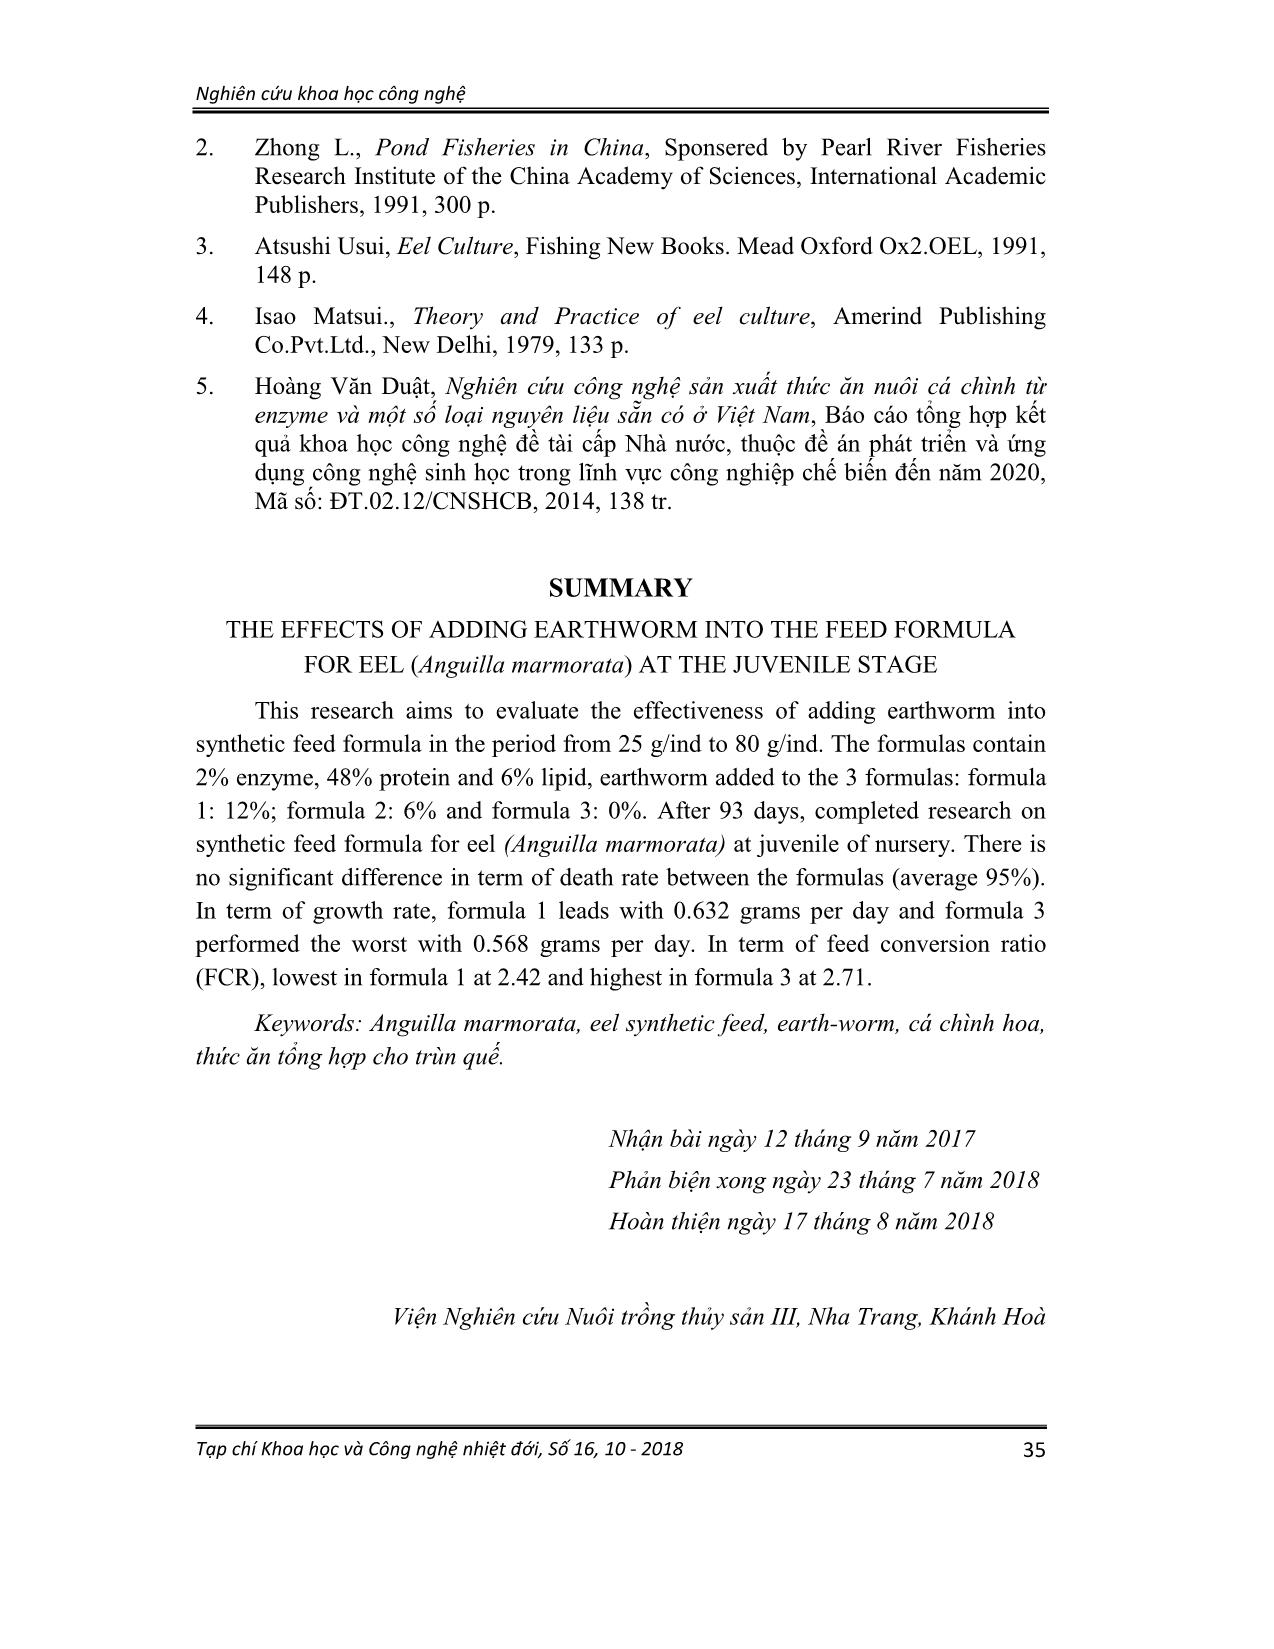 Nghiên cứu ảnh hưởng bổ sung trùn quế vào công thức thức ăn cho cá chình hoa (Anguilla marmorata) giai đoạn giống trang 7